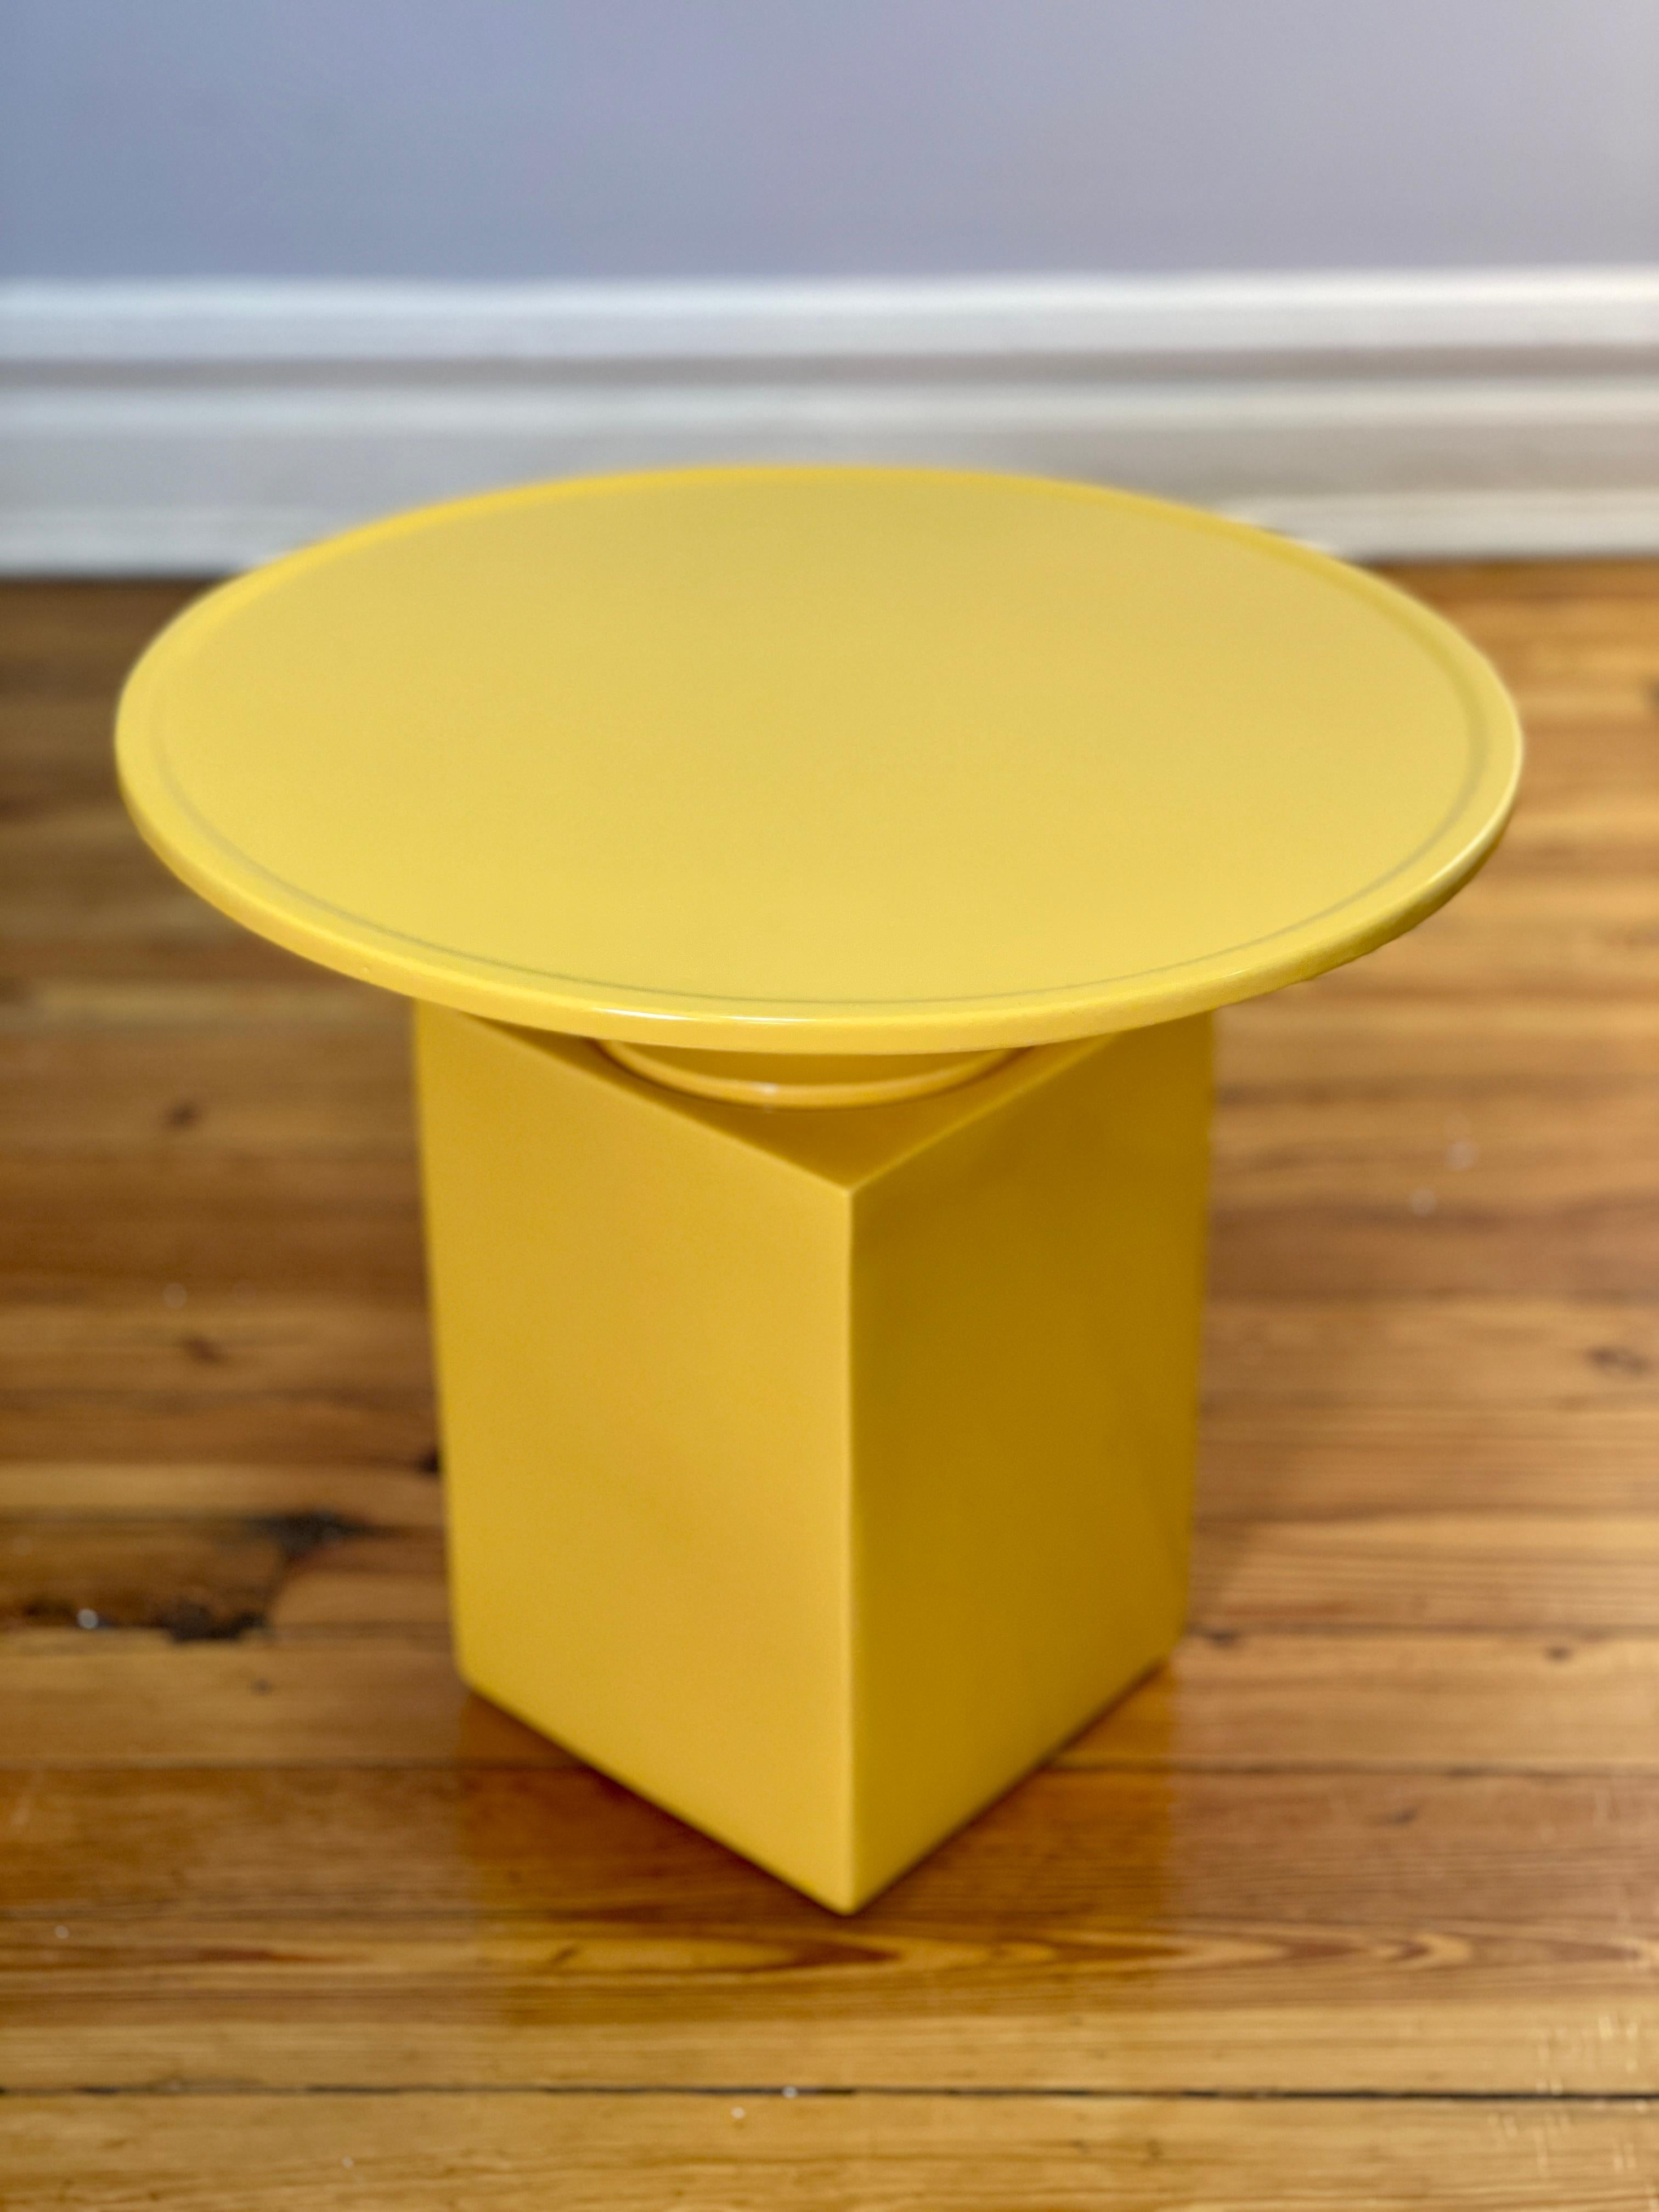 Cette table d'appoint contemporaine fait partie de la Collection Delcourt. Édition de Christophe Delcourt et conception de Vincent Dupont-Rougier.  La table d'appoint OUK est en céramique et magnifiquement émaillée d'un ton jaune vibrant. Son design